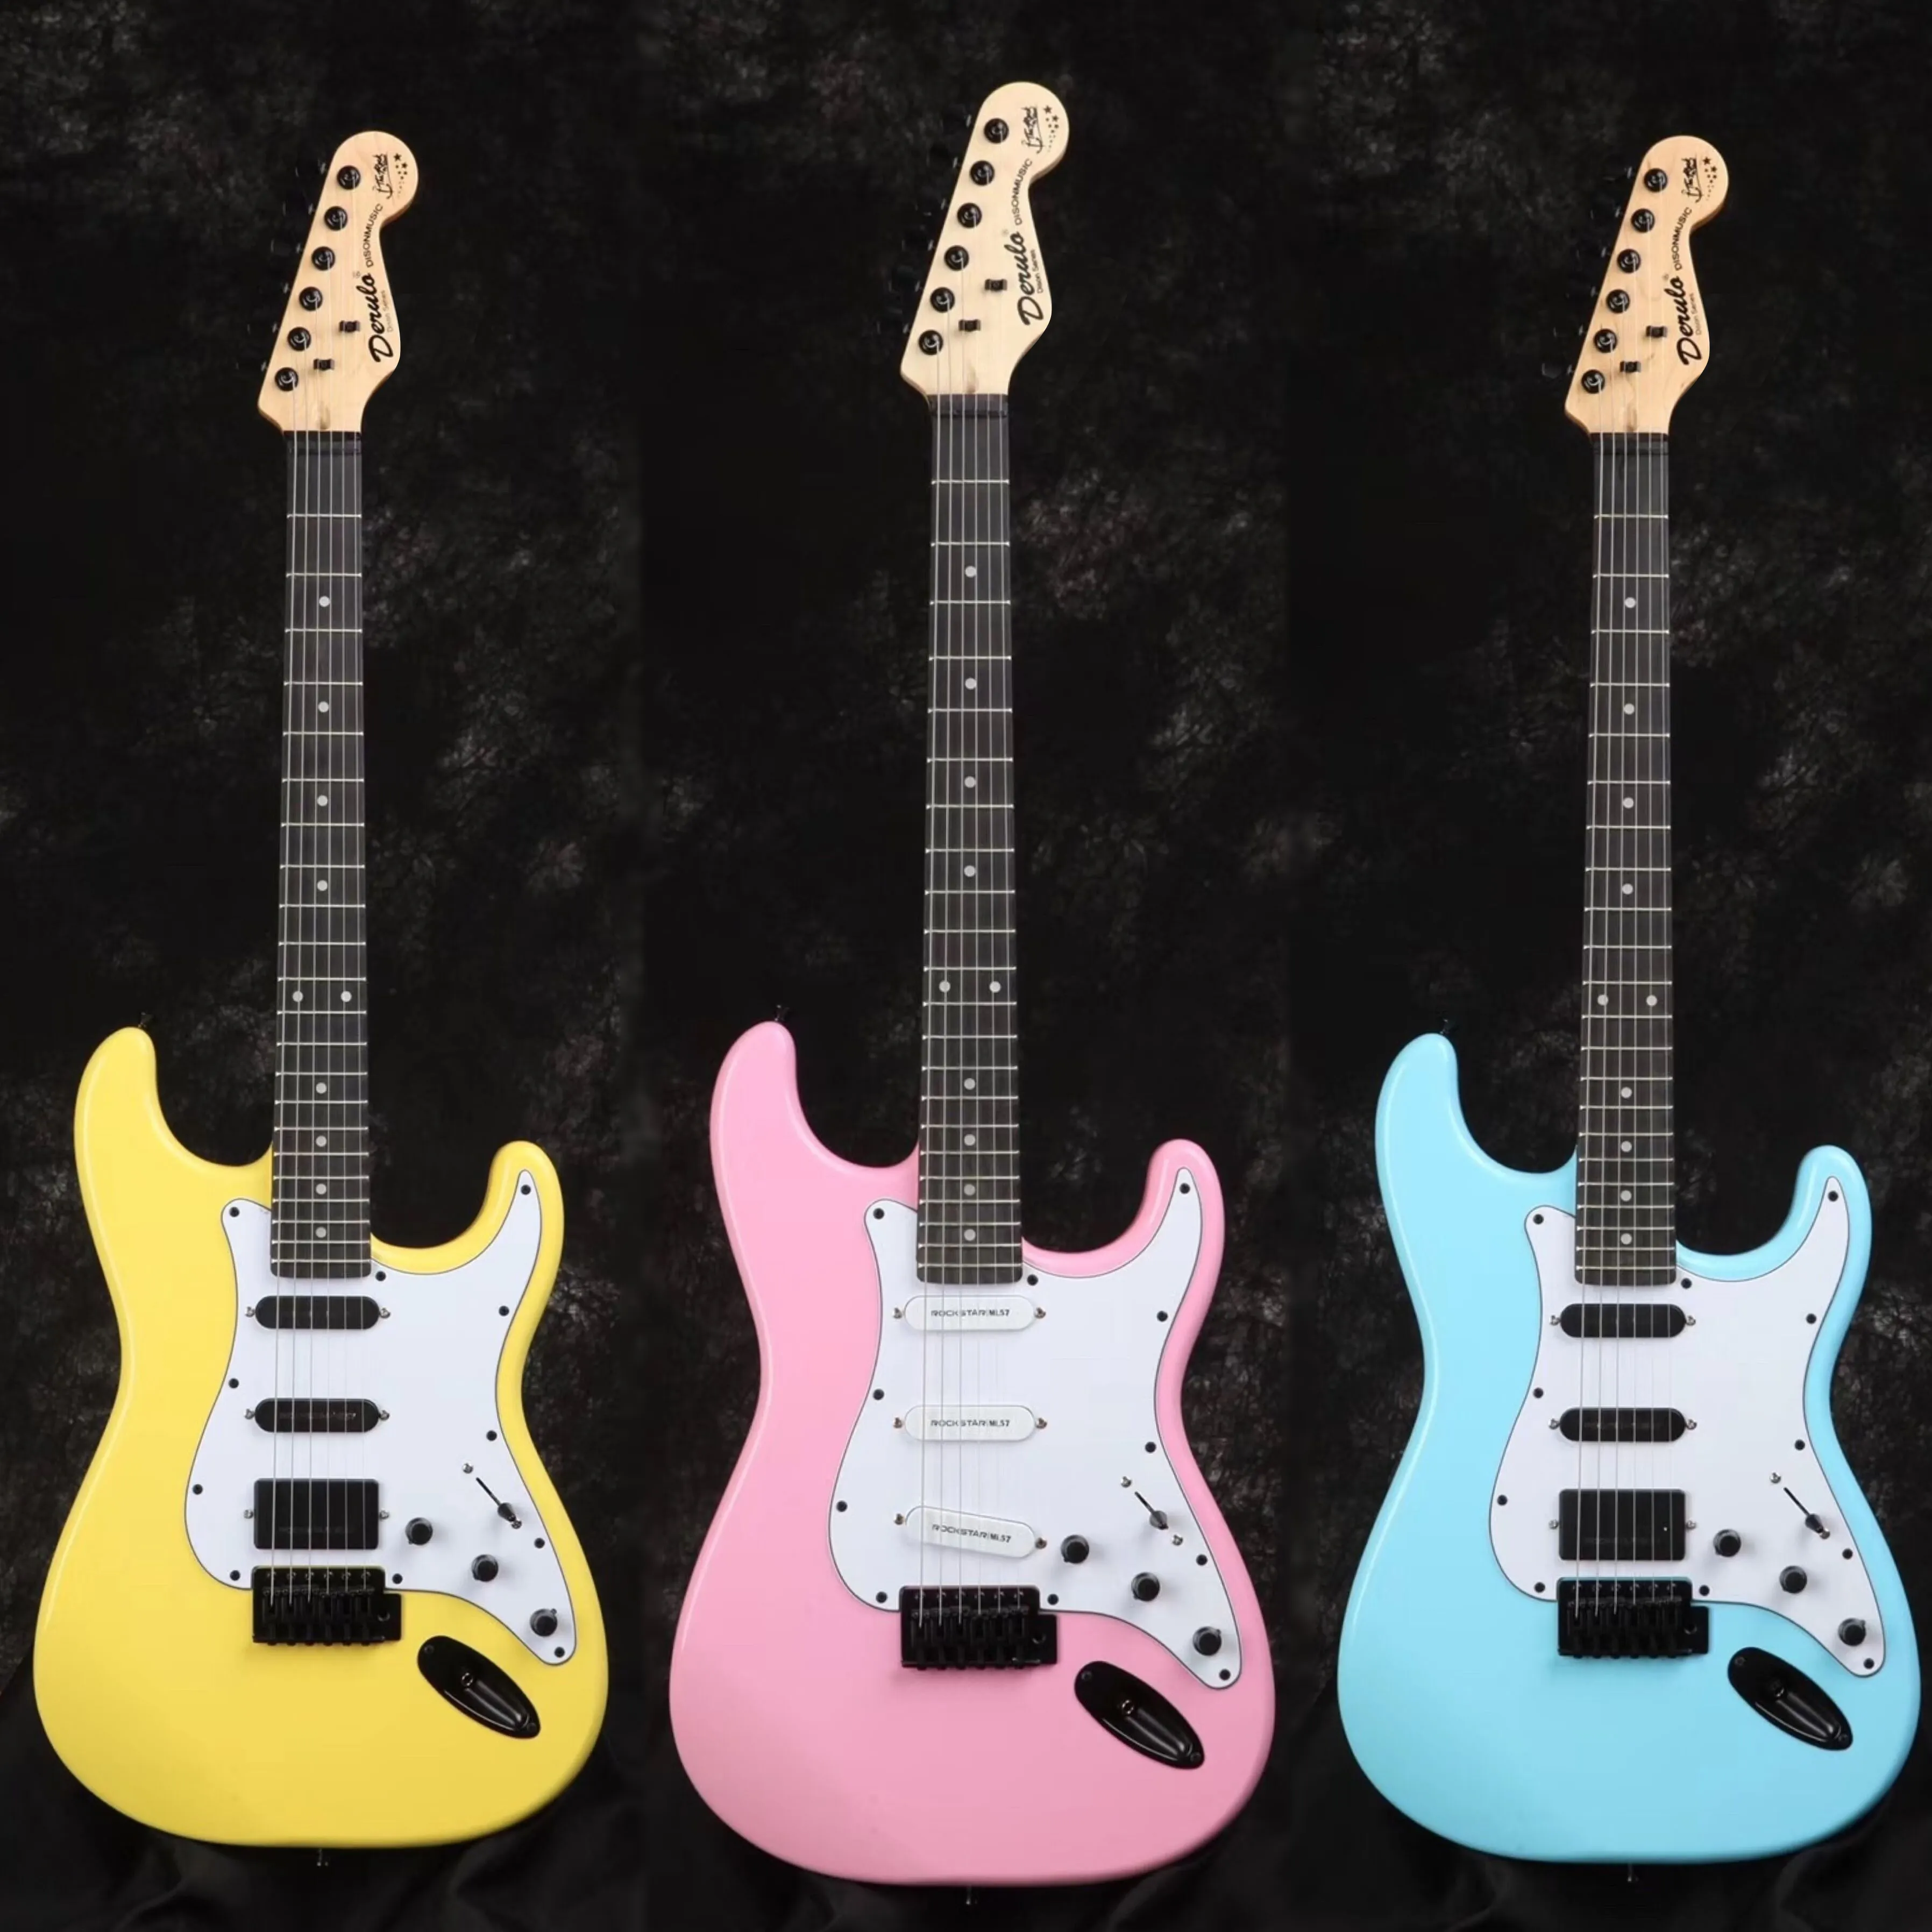 ديرولو الغيتار الكهربائي عالية الجودة 6 سلاسل ST نوع رخيصة الثمن إد أصفر وردي أزرق أسود أبيض متعددة الألوان سعر المصنع